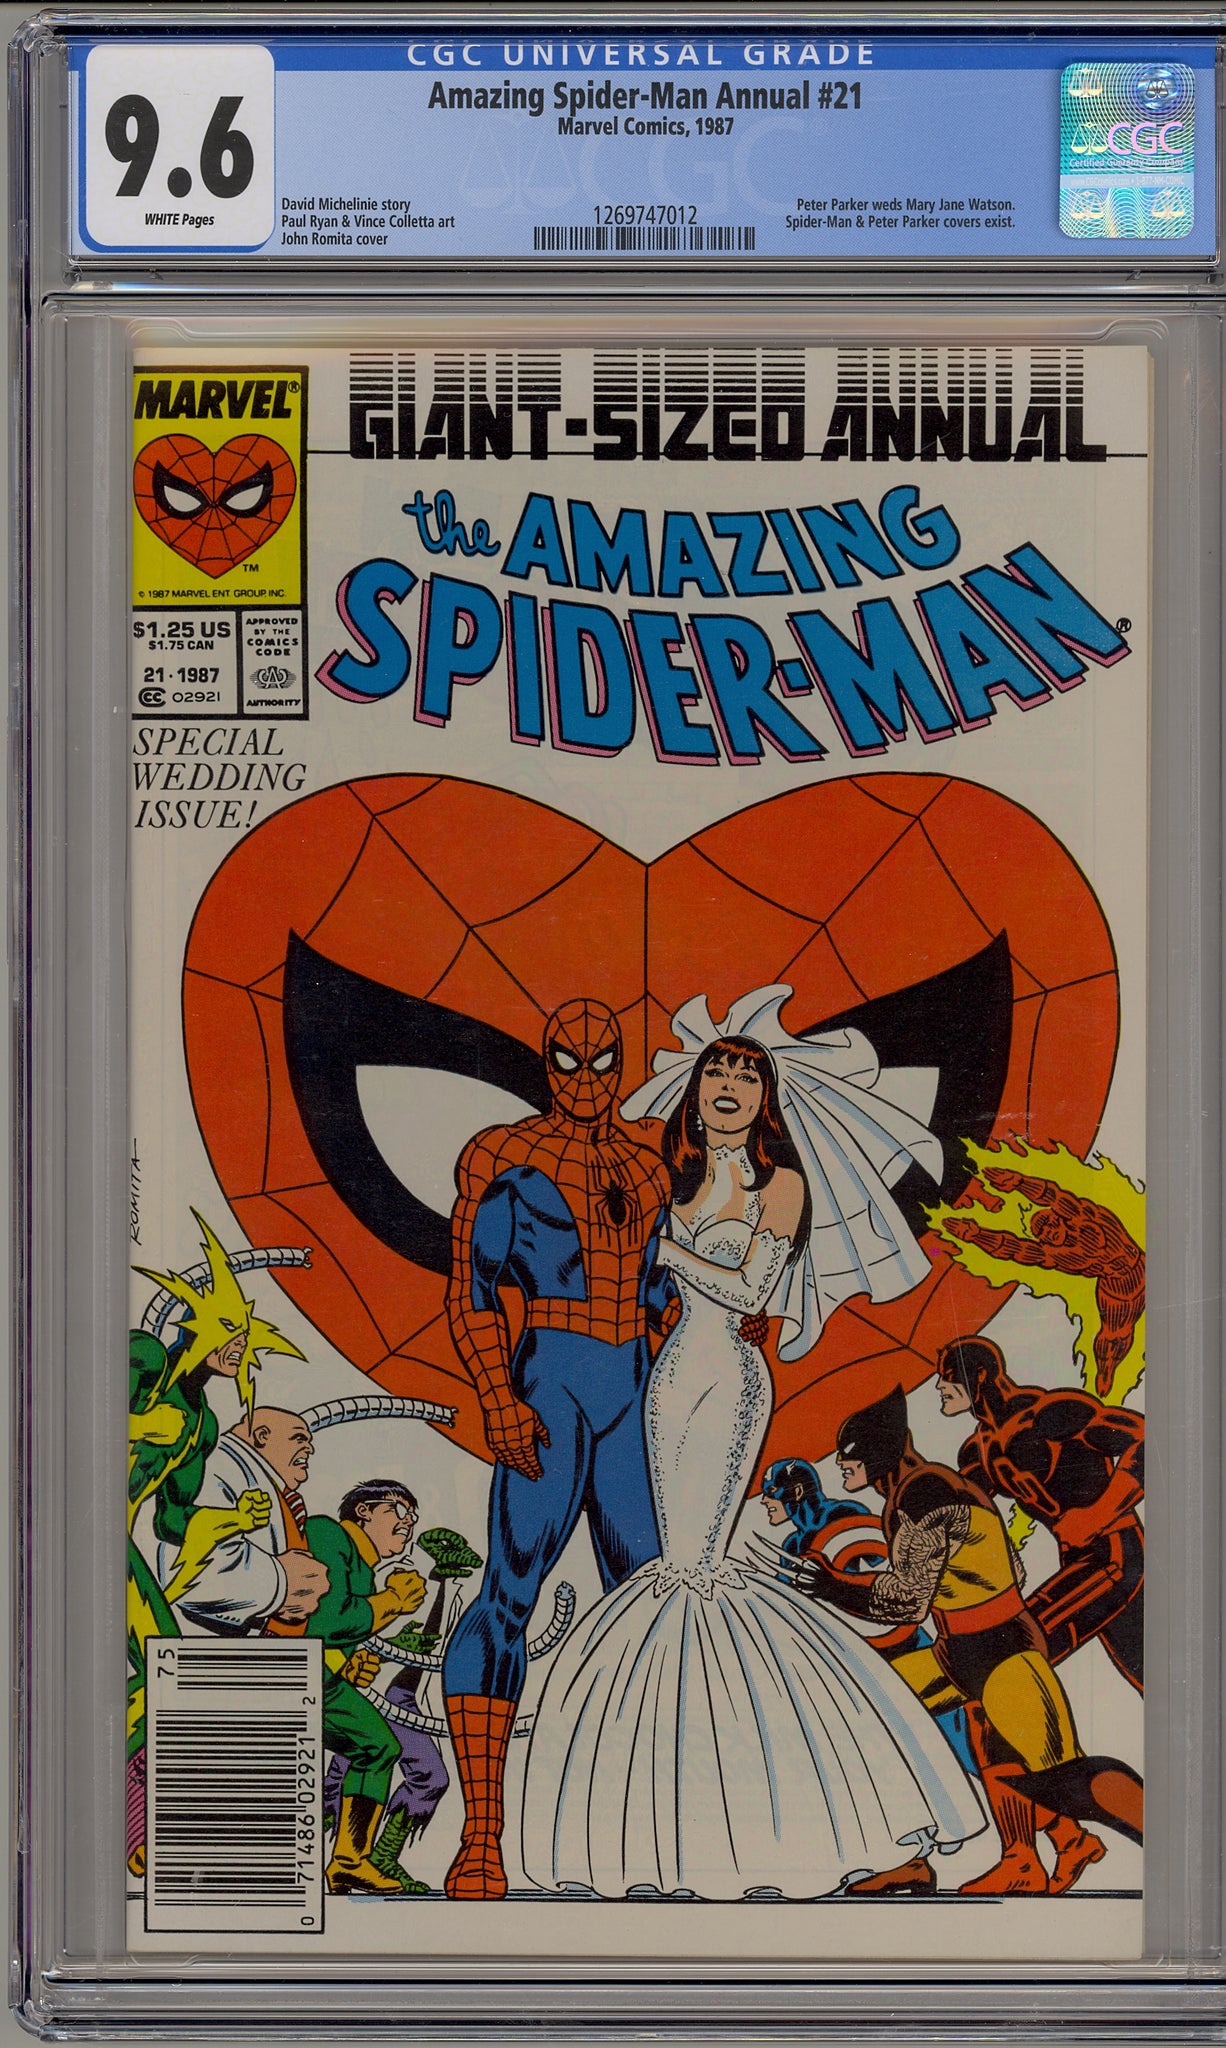 Amazing Spider-Man Annual #21 (1987) newsstand edition - wedding issue